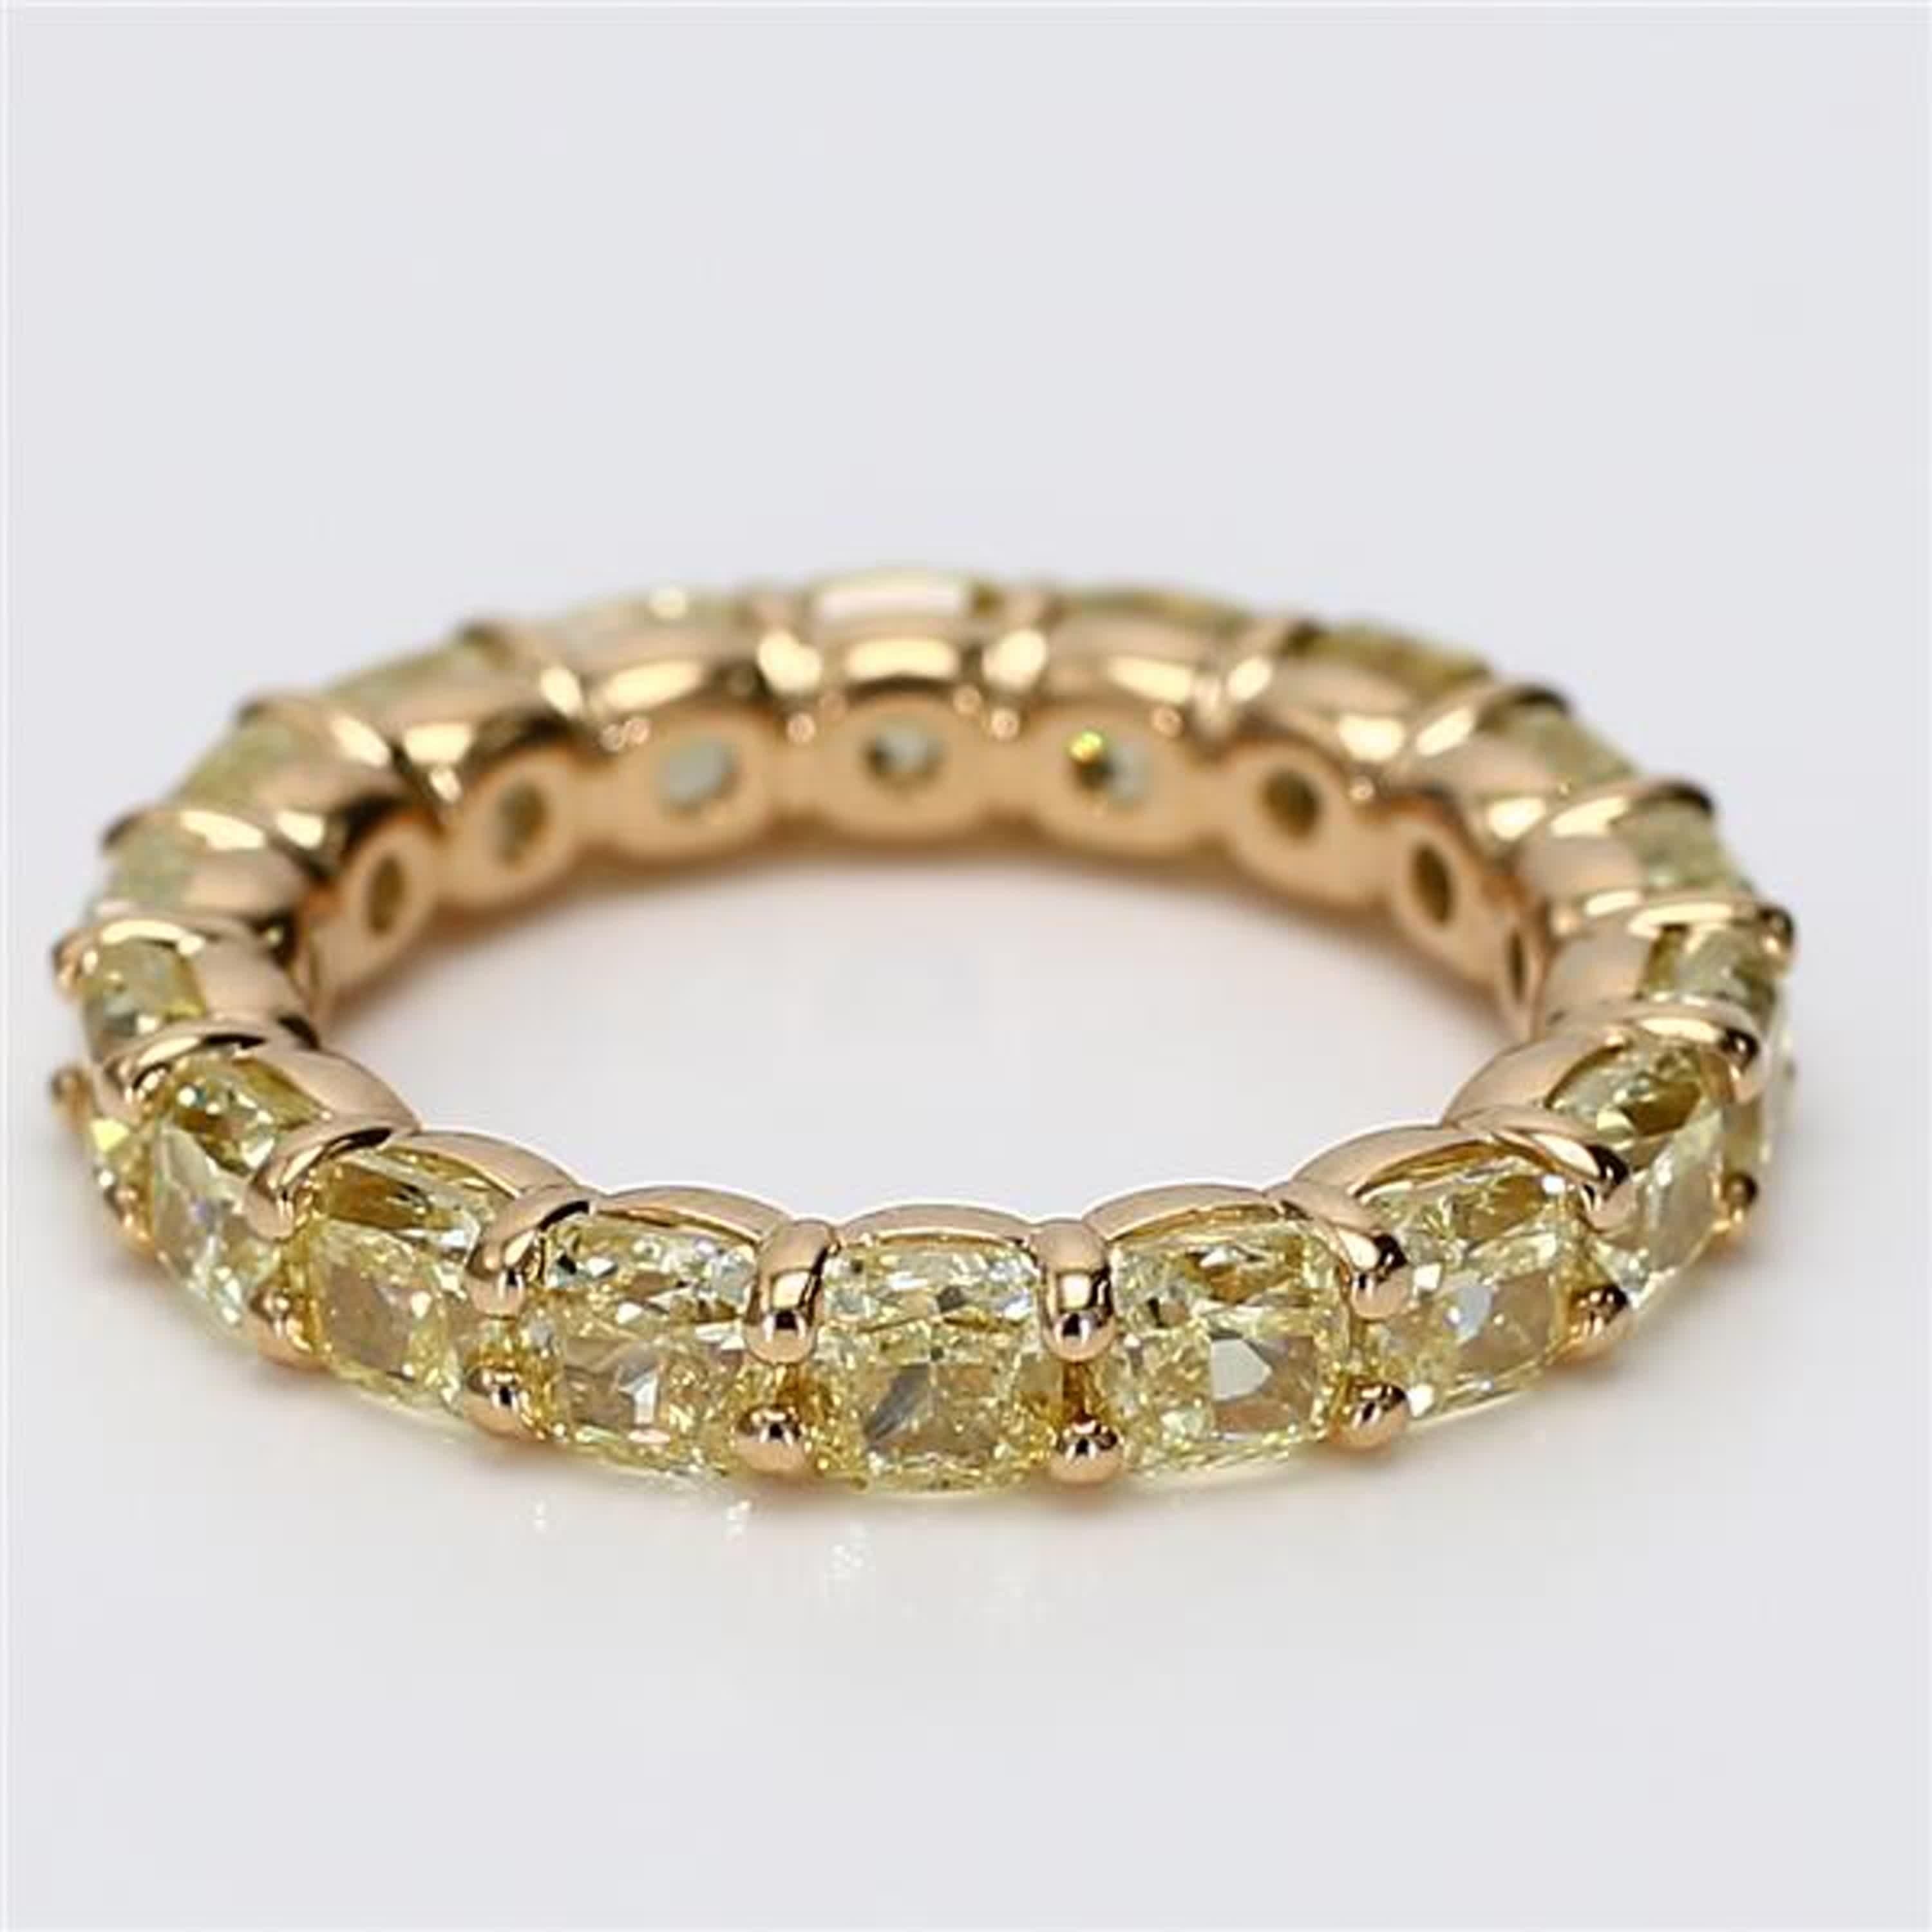 RareGemWorld's klassisches Diamantband für die Ewigkeit. Eingefasst in eine wunderschöne Fassung aus 18 Karat Gelb- und Weißgold mit gelben Diamanten im Kissenschliff. Dieses Band wird Sie garantiert beeindrucken und Ihre persönliche Sammlung